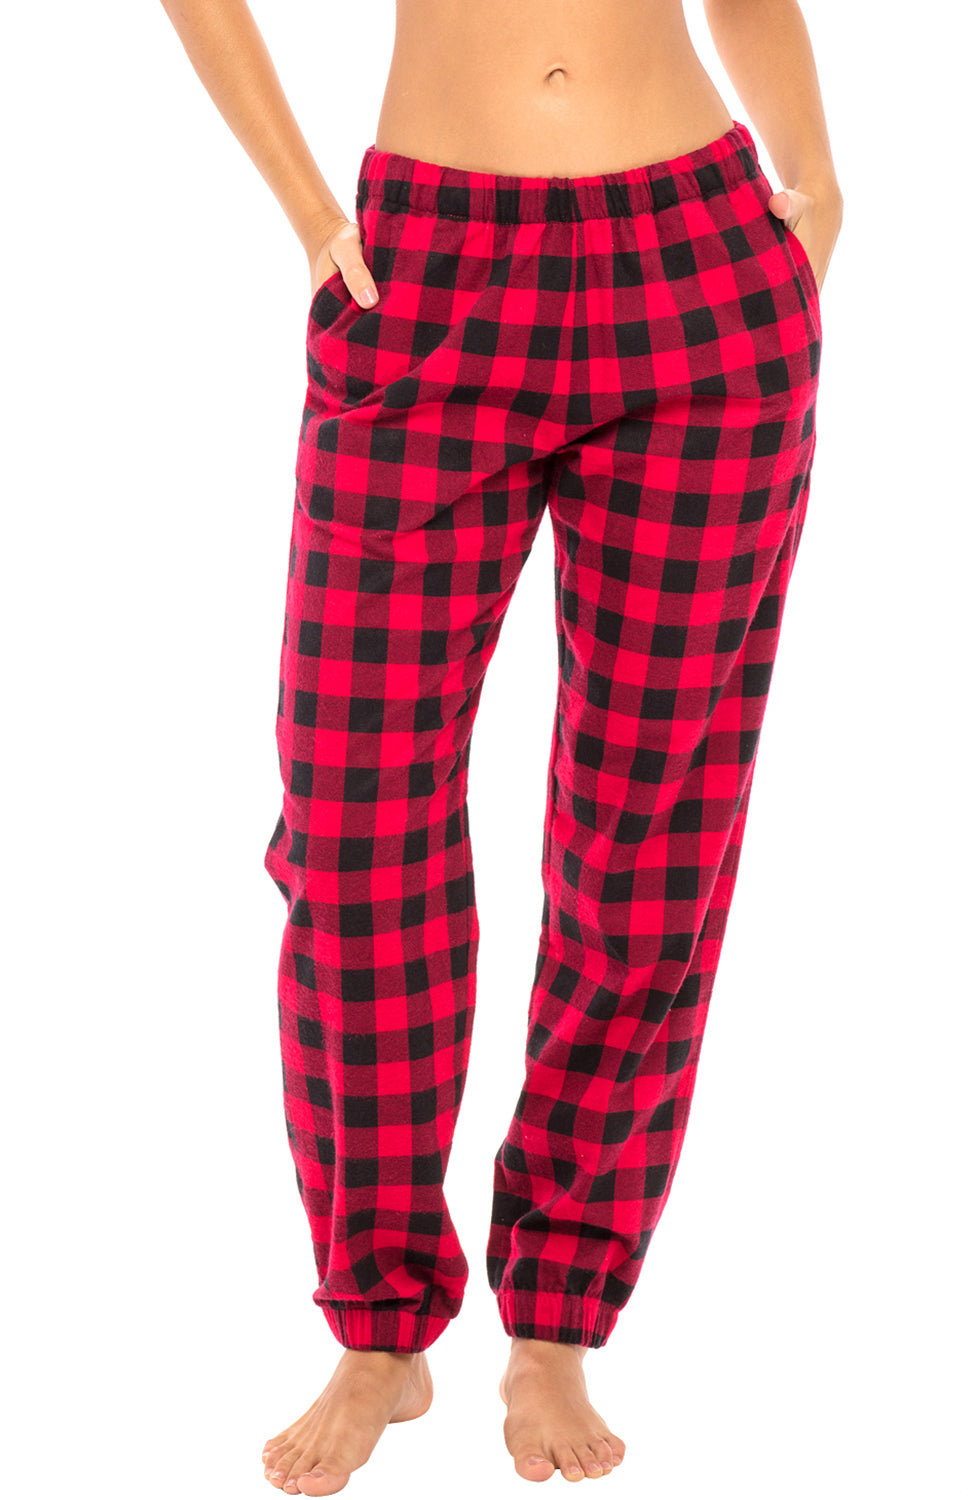 Buy Pyjamas at Low Price - Women's Pyjamas and Night pants for ladies (Page  2) | Zivame